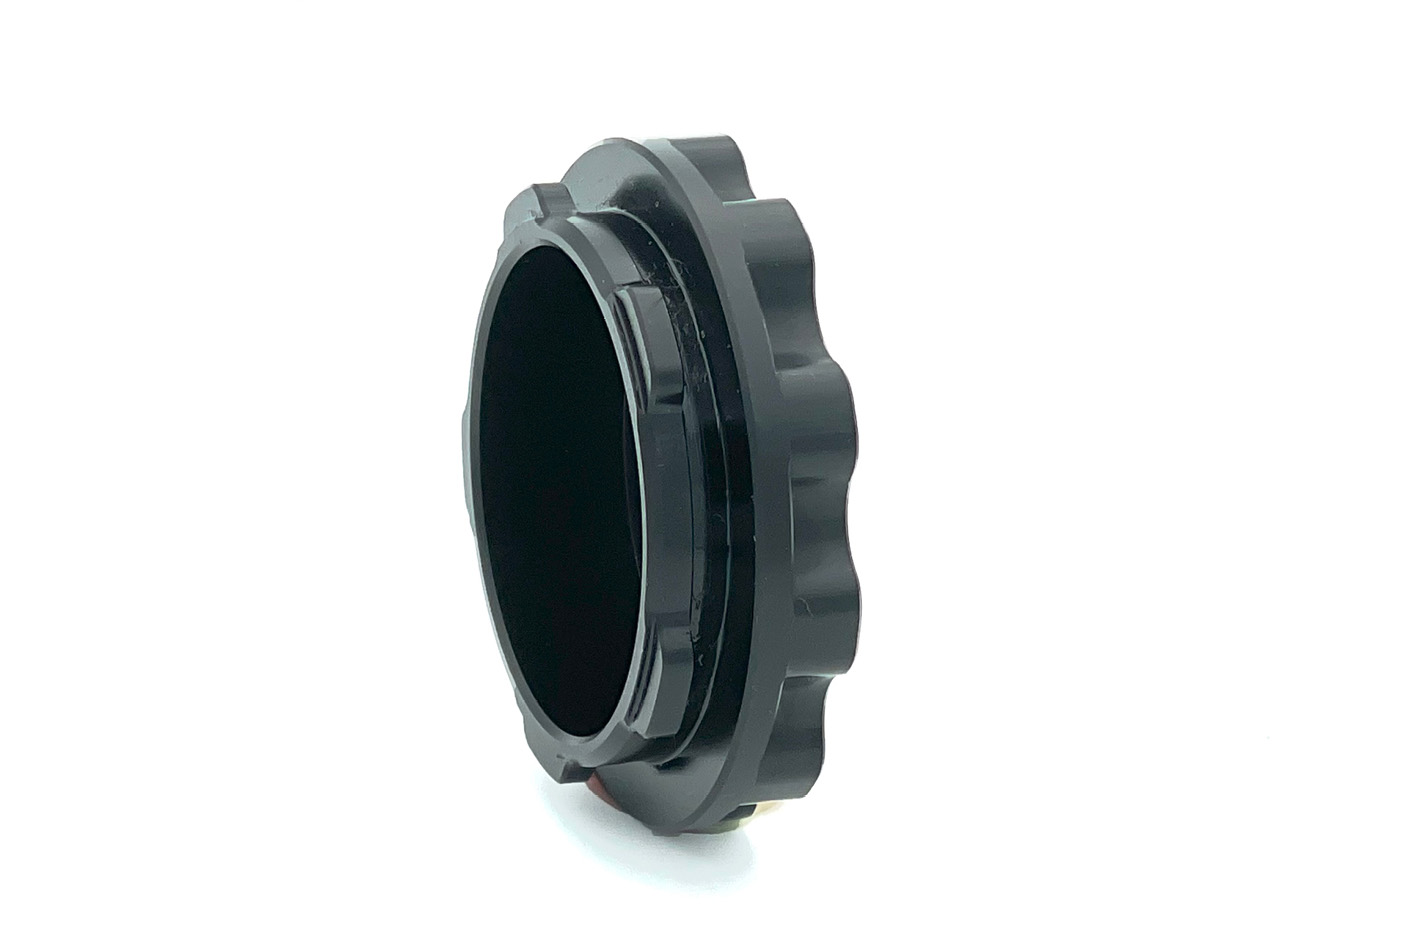 Präzise Jagen Verschlusskappe Klein (bis 61 mm Ø) Schutz des Objektives Für Klemmhülsen bis 61 mm Ø Aluminium